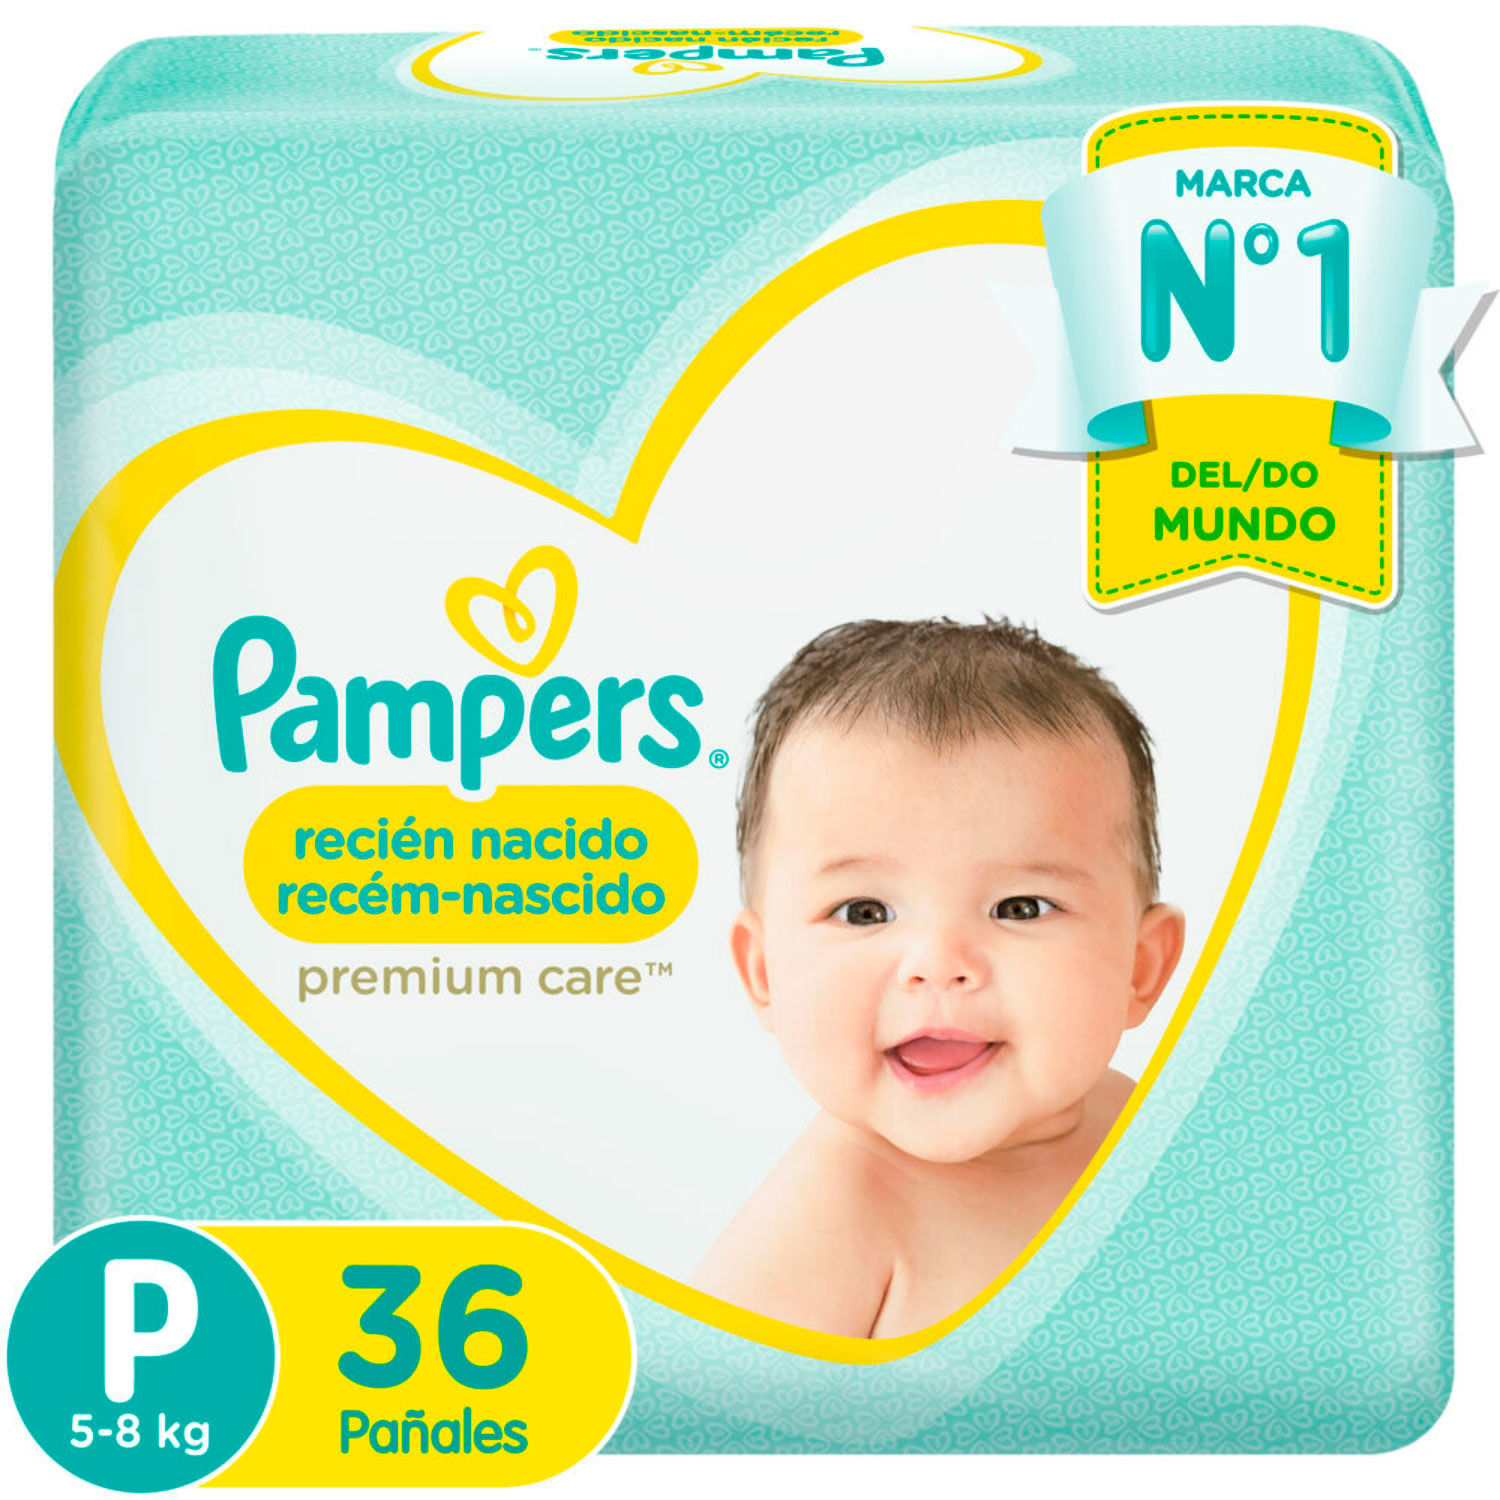 Pañal Pampers Premium Care Recién Nacido x 56 unid